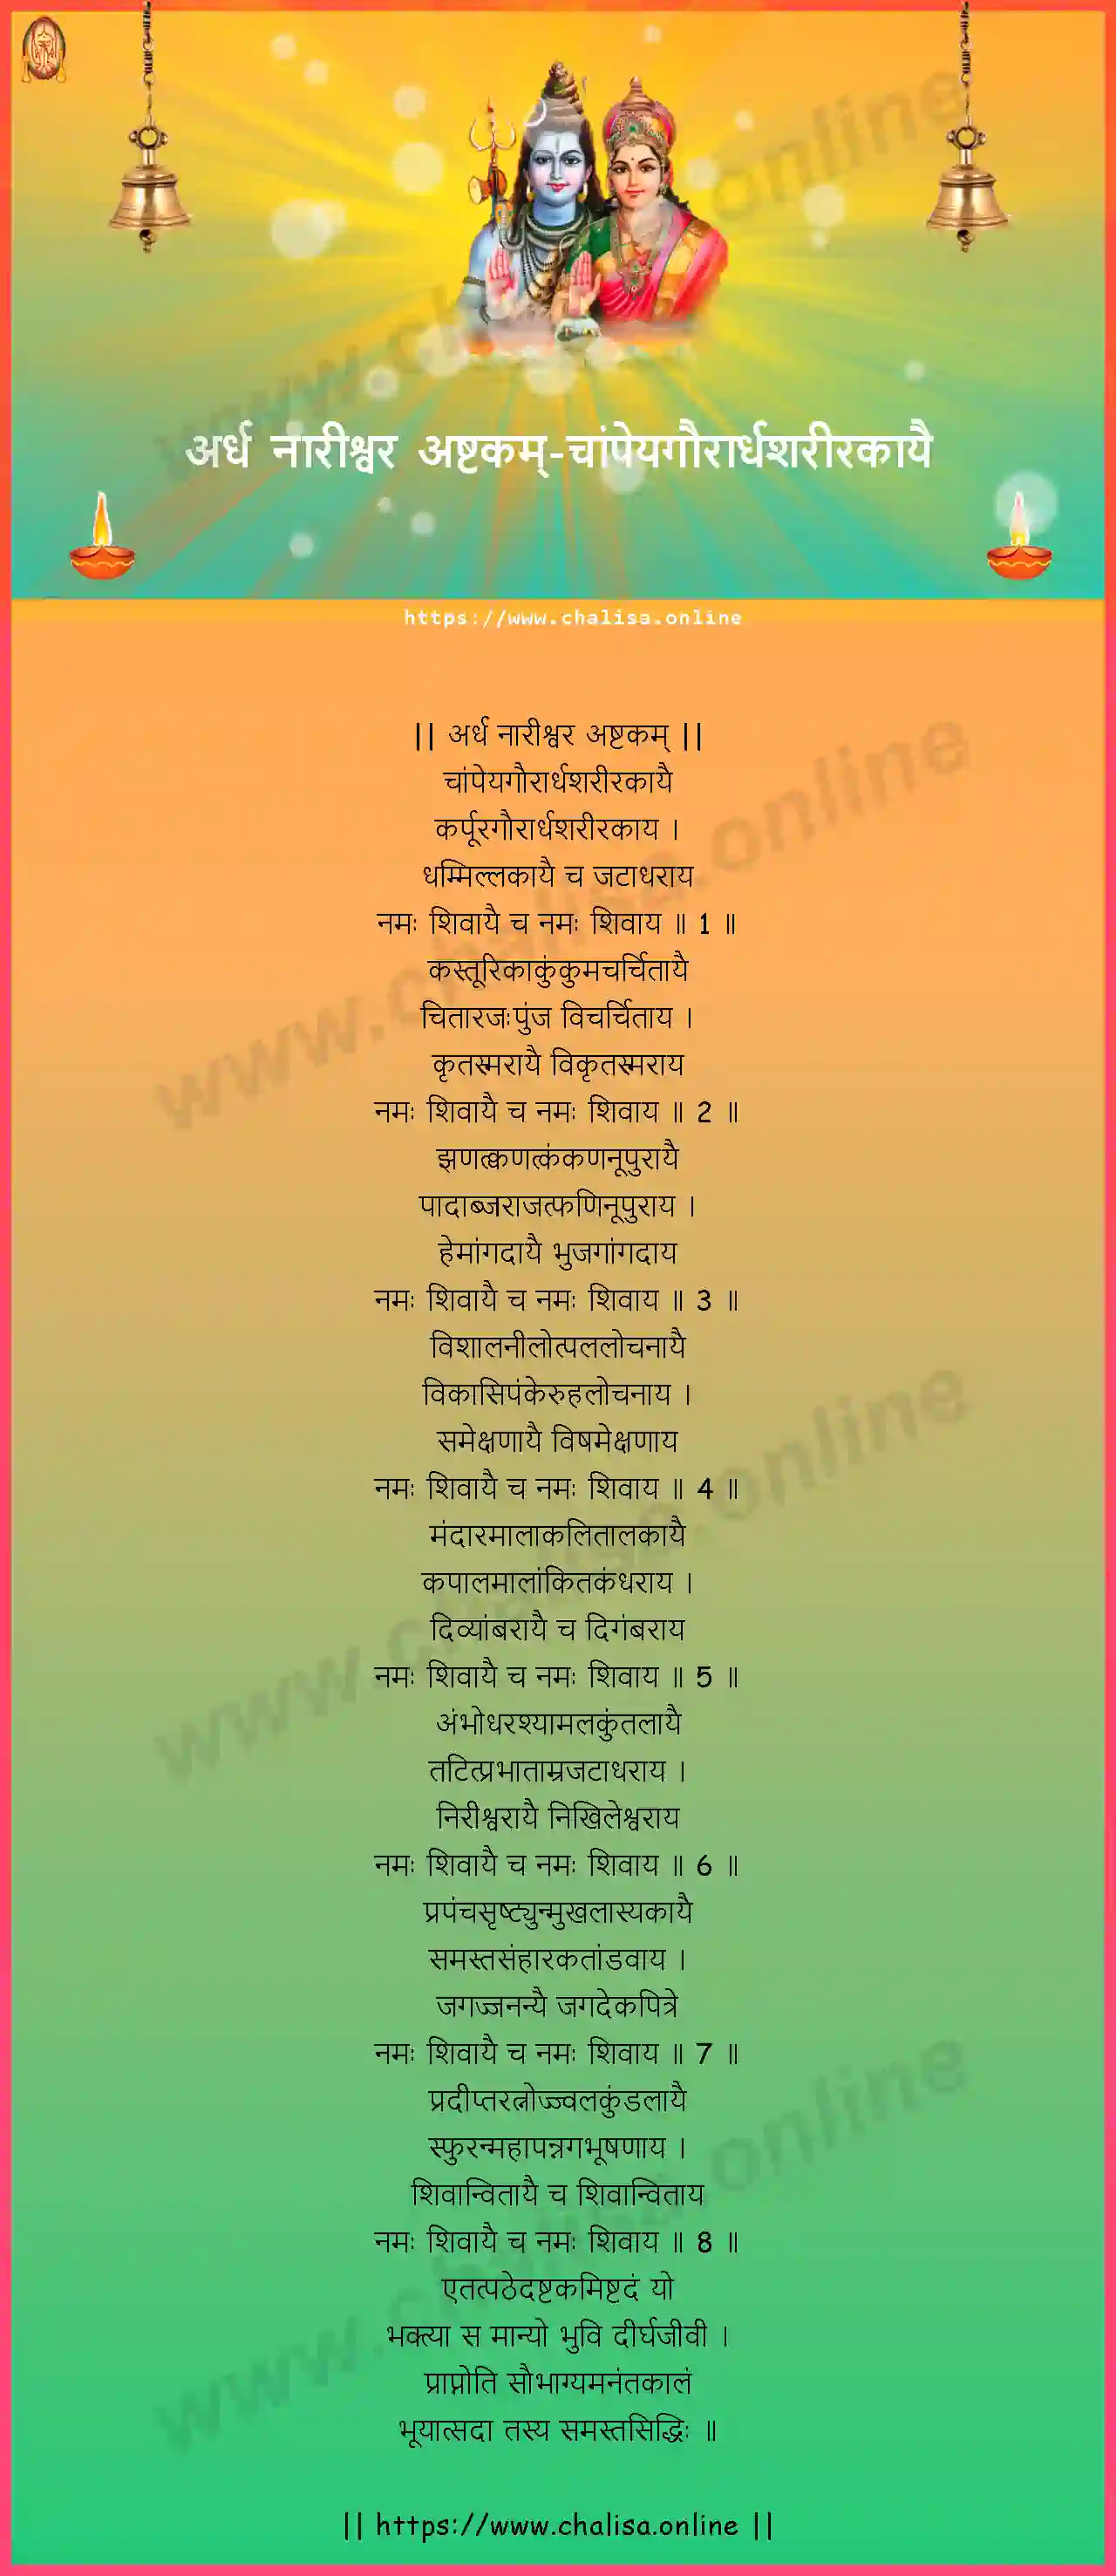 champeyagaurardhasarirakayai-ardha-naareeswara-ashtakam-marathi-marathi-lyrics-download